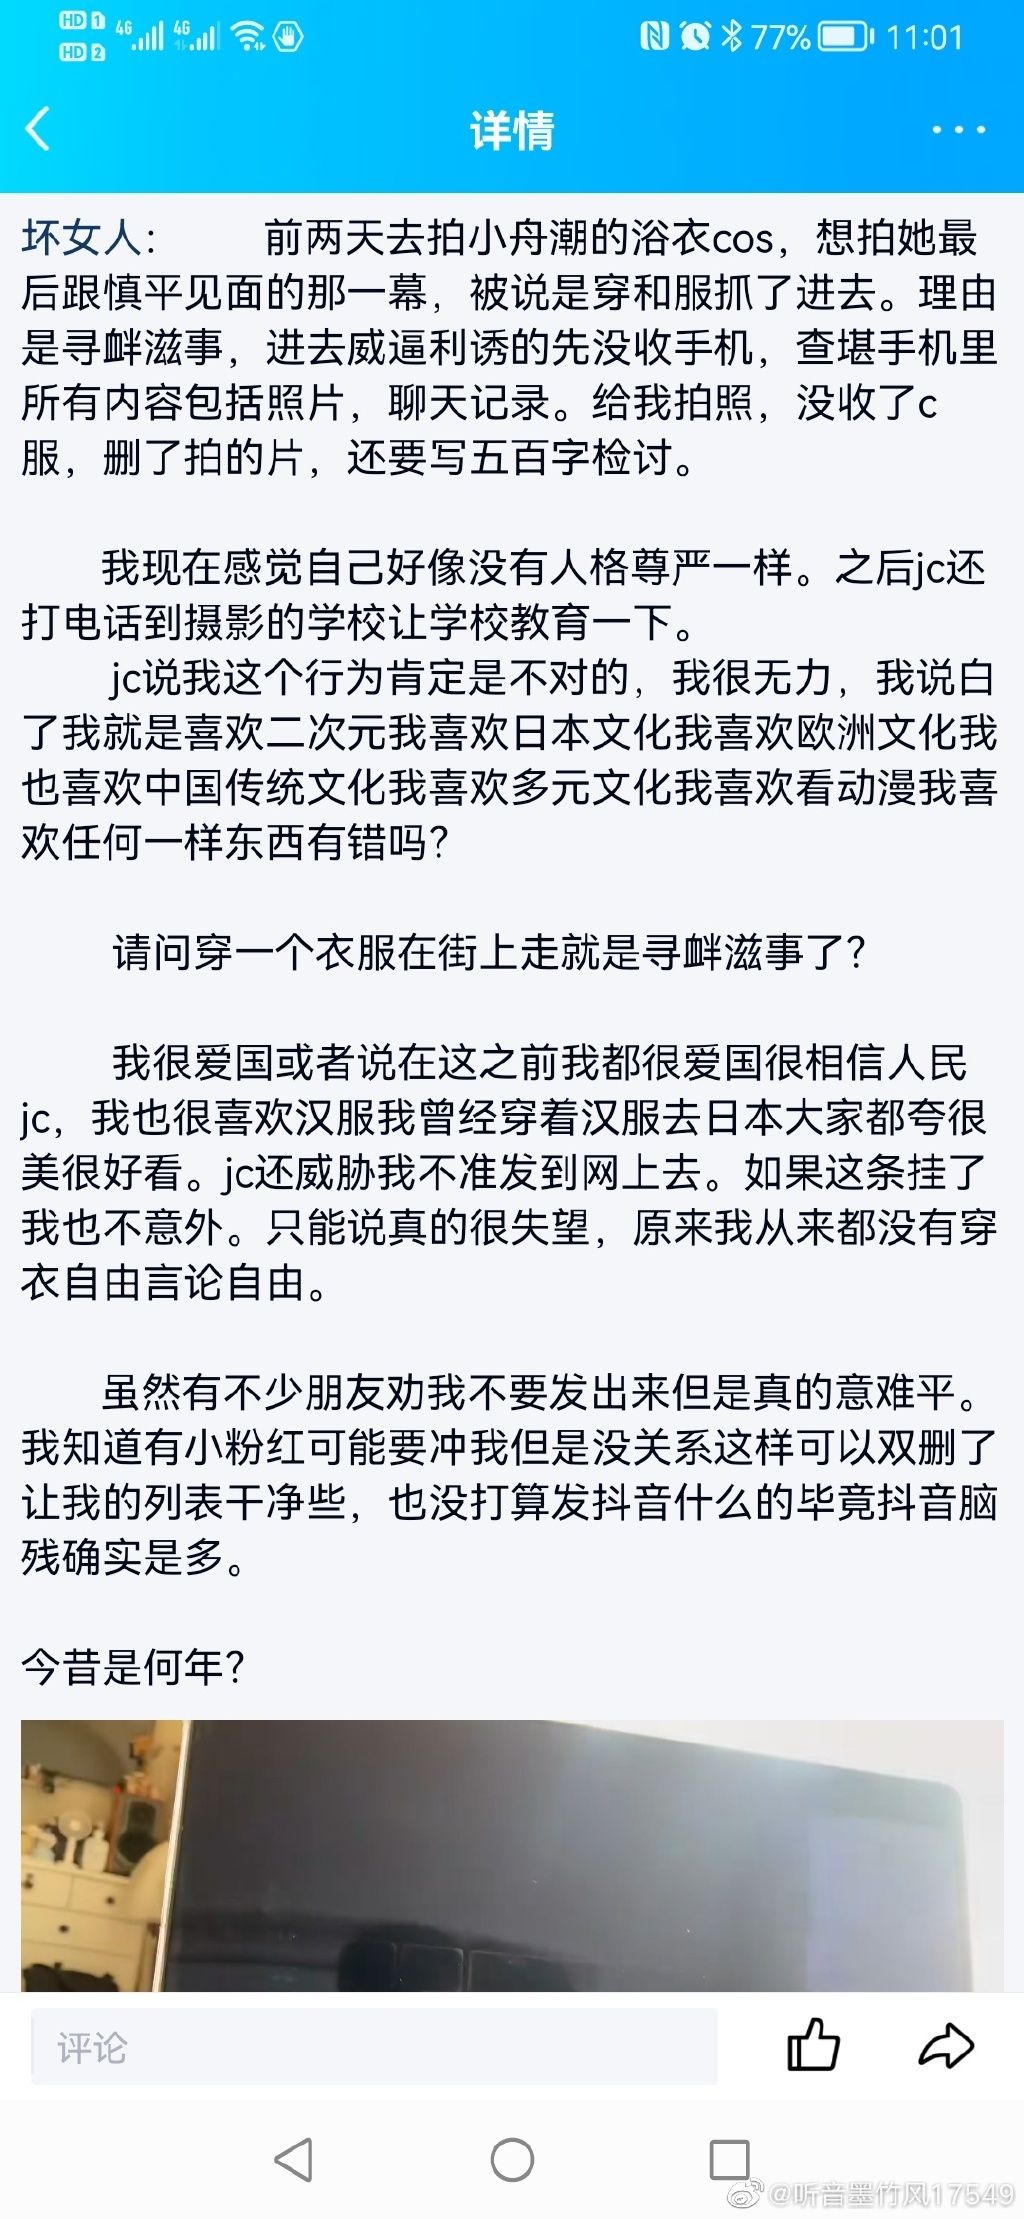 Re: [閒聊] 中國女生穿日式浴衣當街被警扒衣逮捕